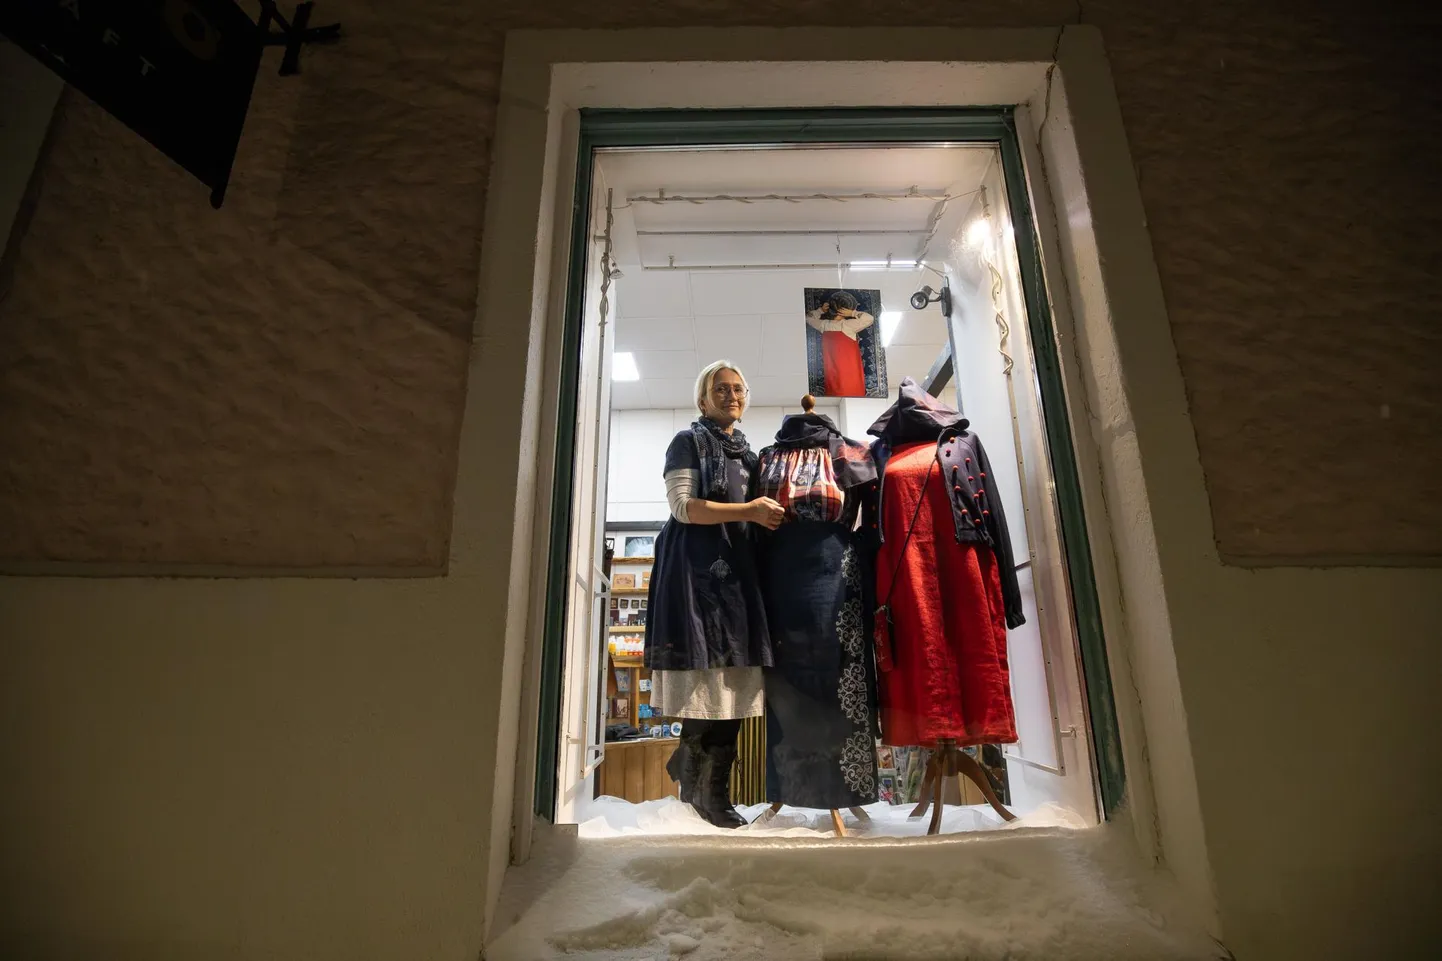 Õnne Uus toob paku- ja reservtrükis rõivaste ja kangastega Rakvere talve Peipsimaa ajaloolist hõngu.